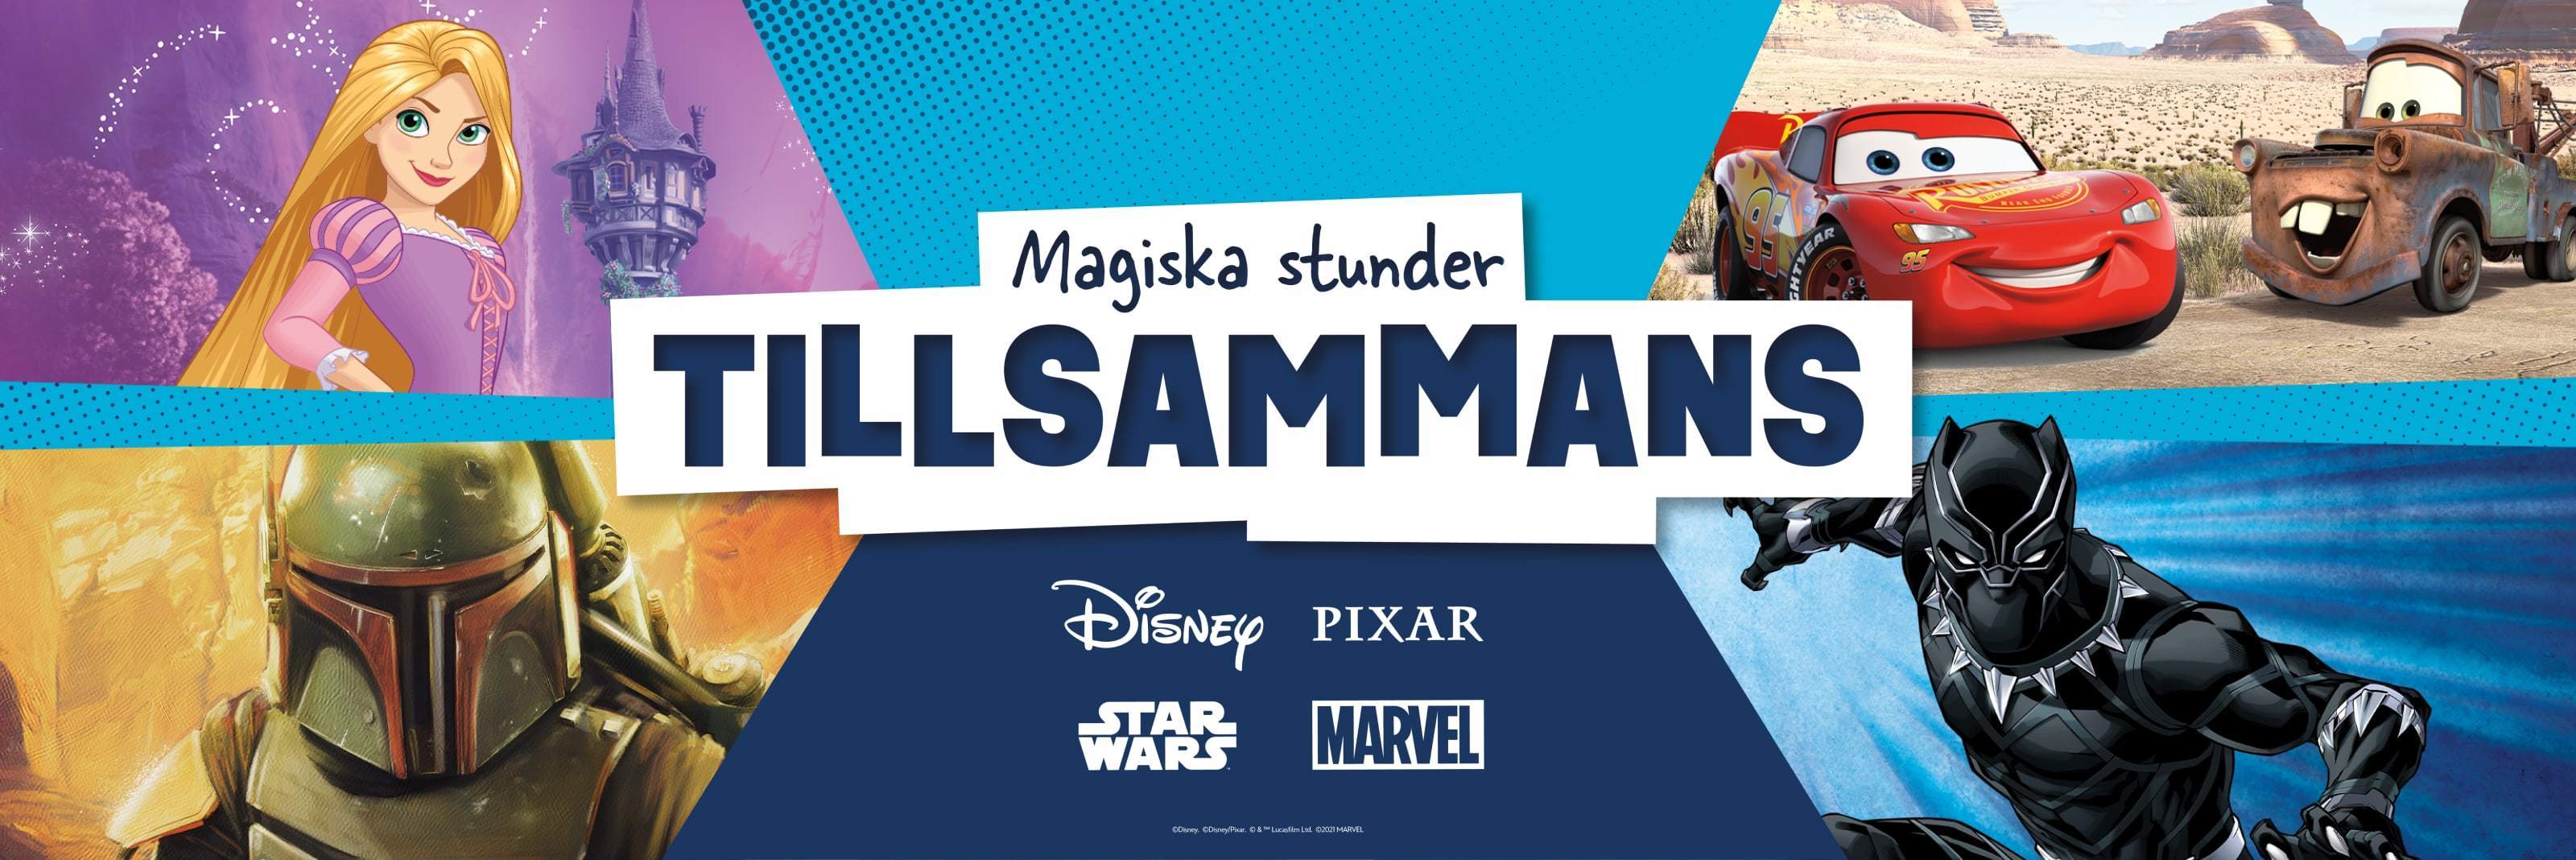 Disney-, Pixar-, Star Wars- och Marvel-karaktärer framför en blå bakgrund med märkeslogotyper i mitten